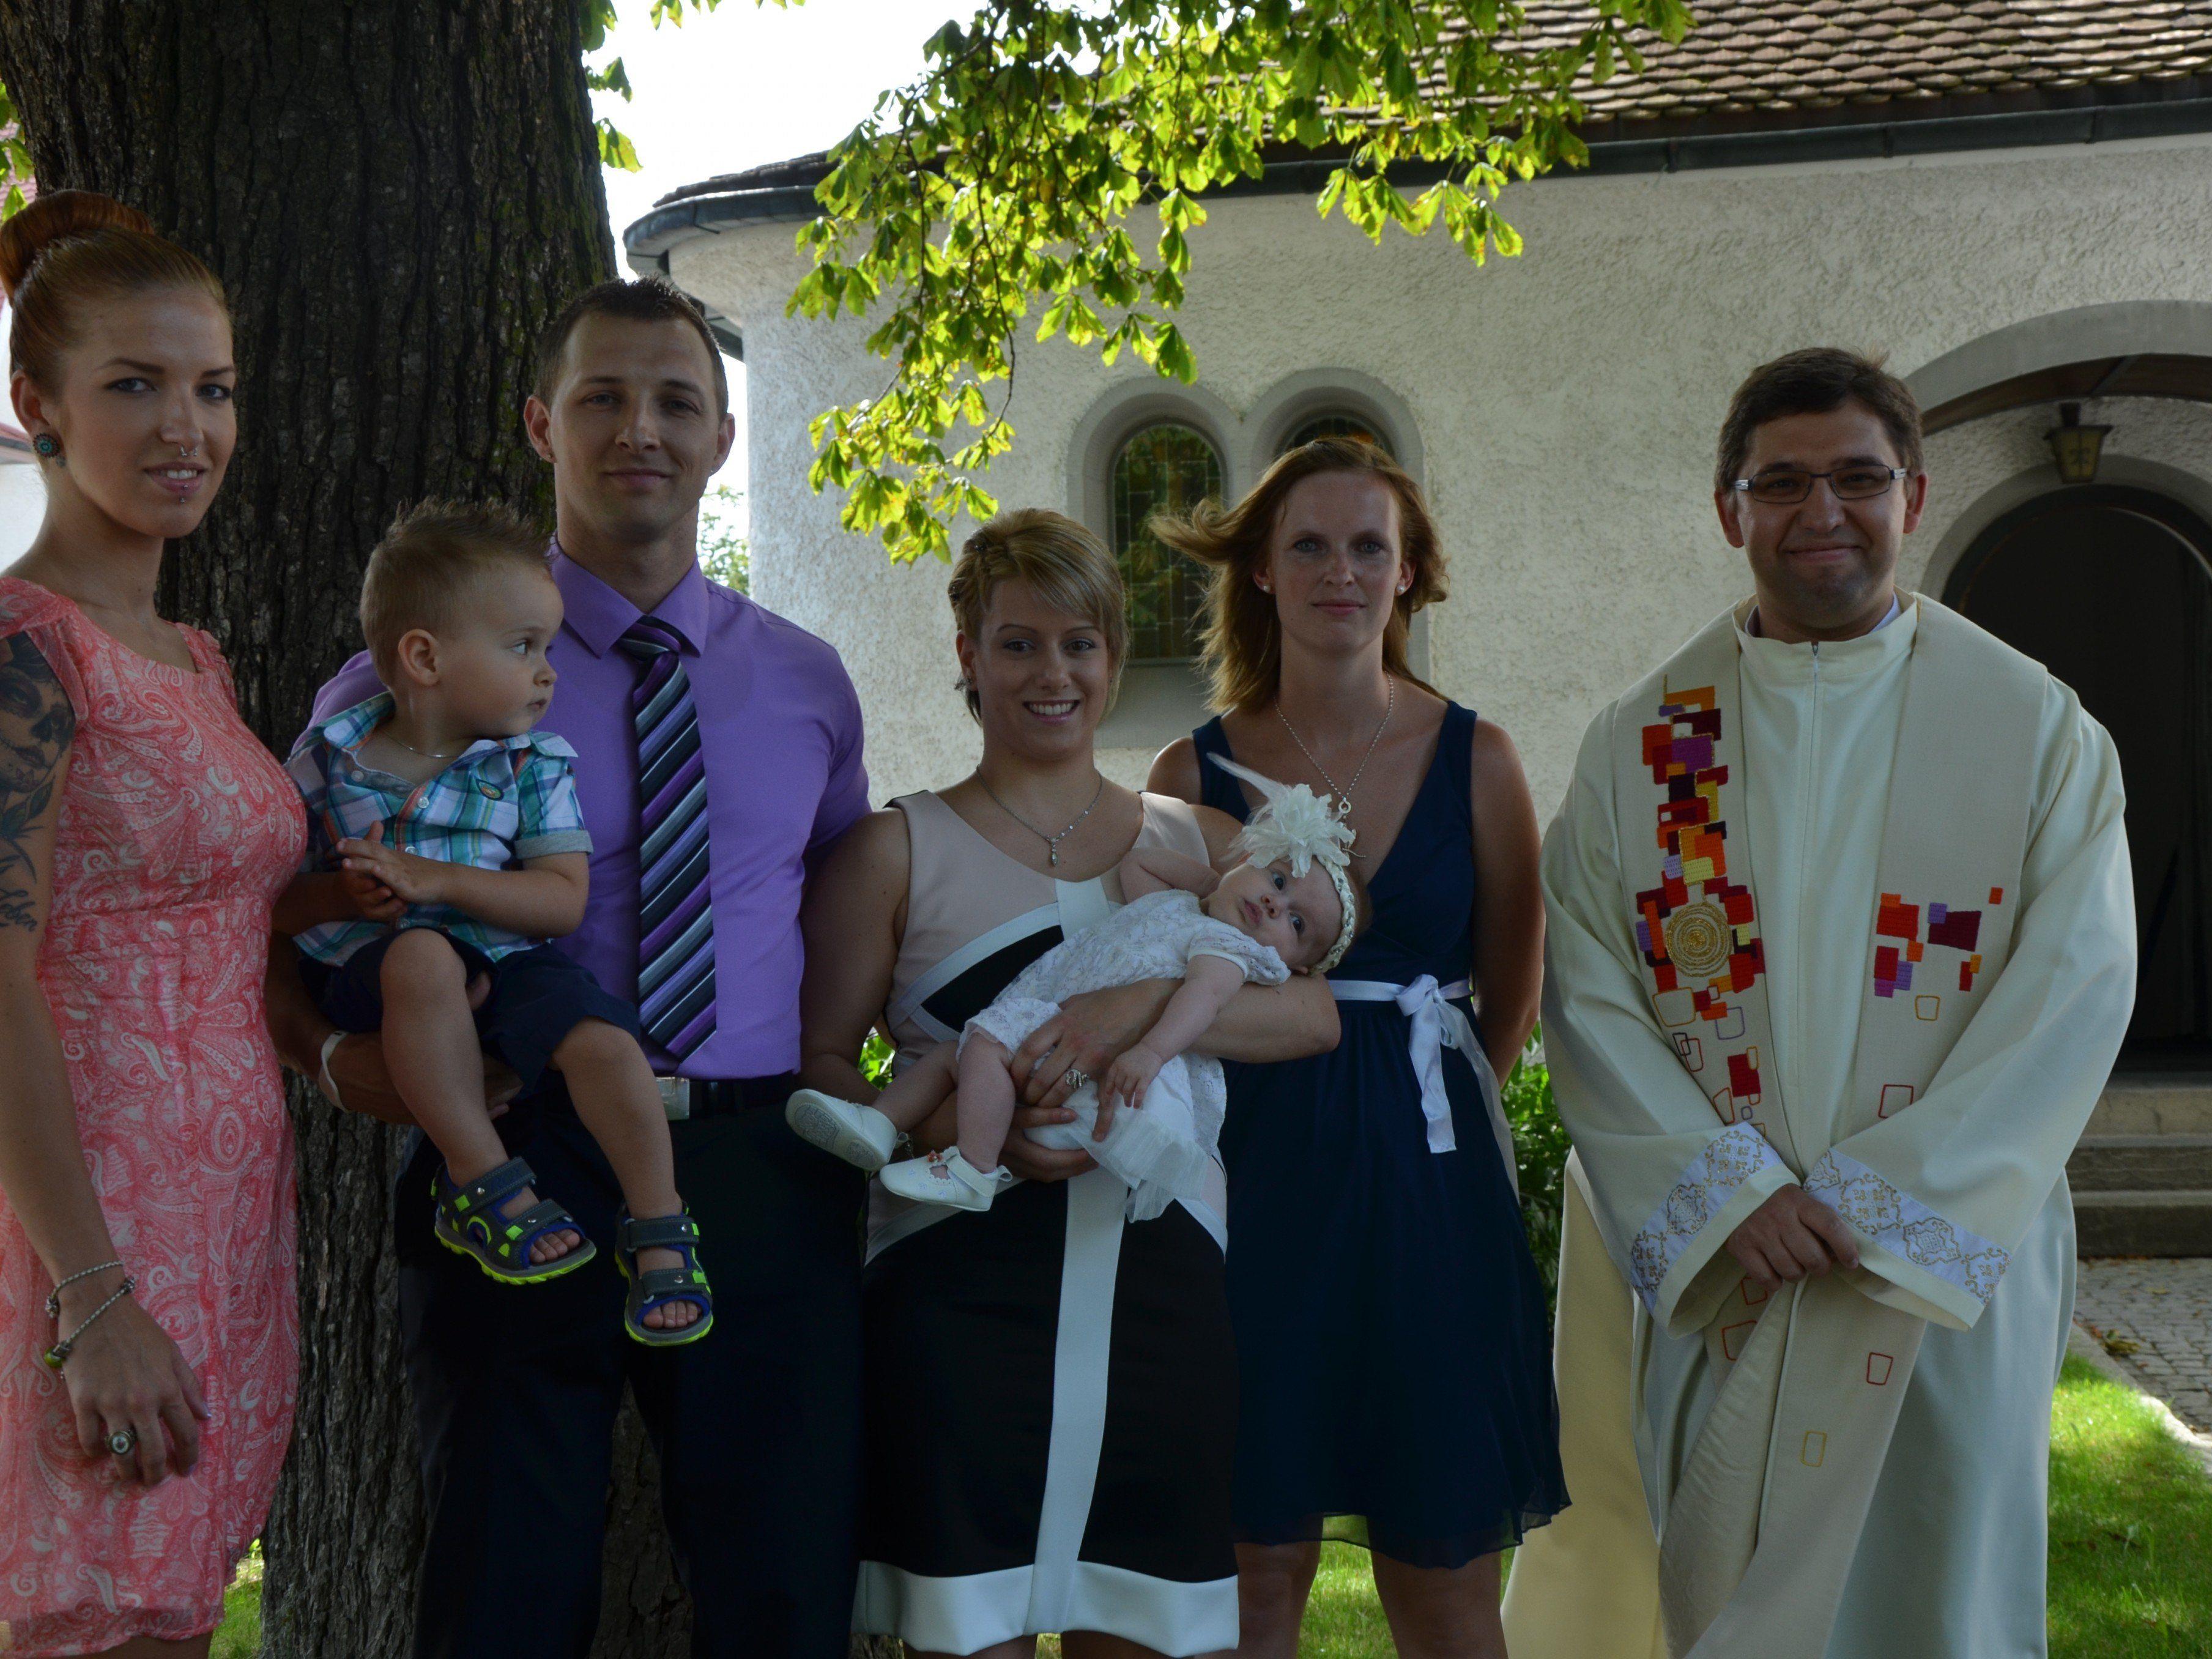 Getauft wurde Leticia Lick am 19. Juli 2014 in der St. Peter und Paul Kirche.